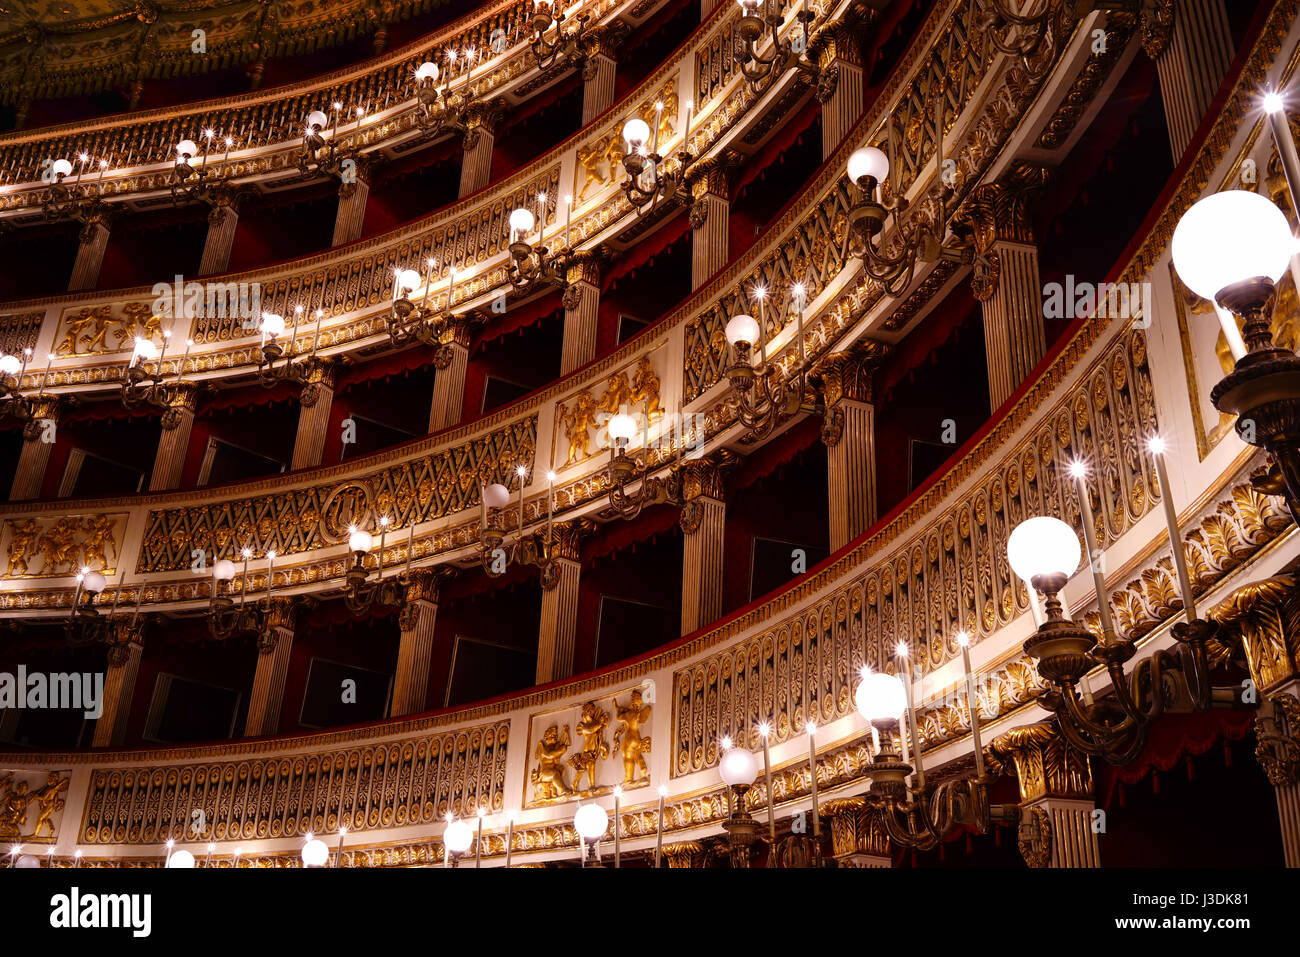 Le Teatro di San Carlo de Naples, Italie. La photo montre l'arrière menant à la droite de la salle. Banque D'Images